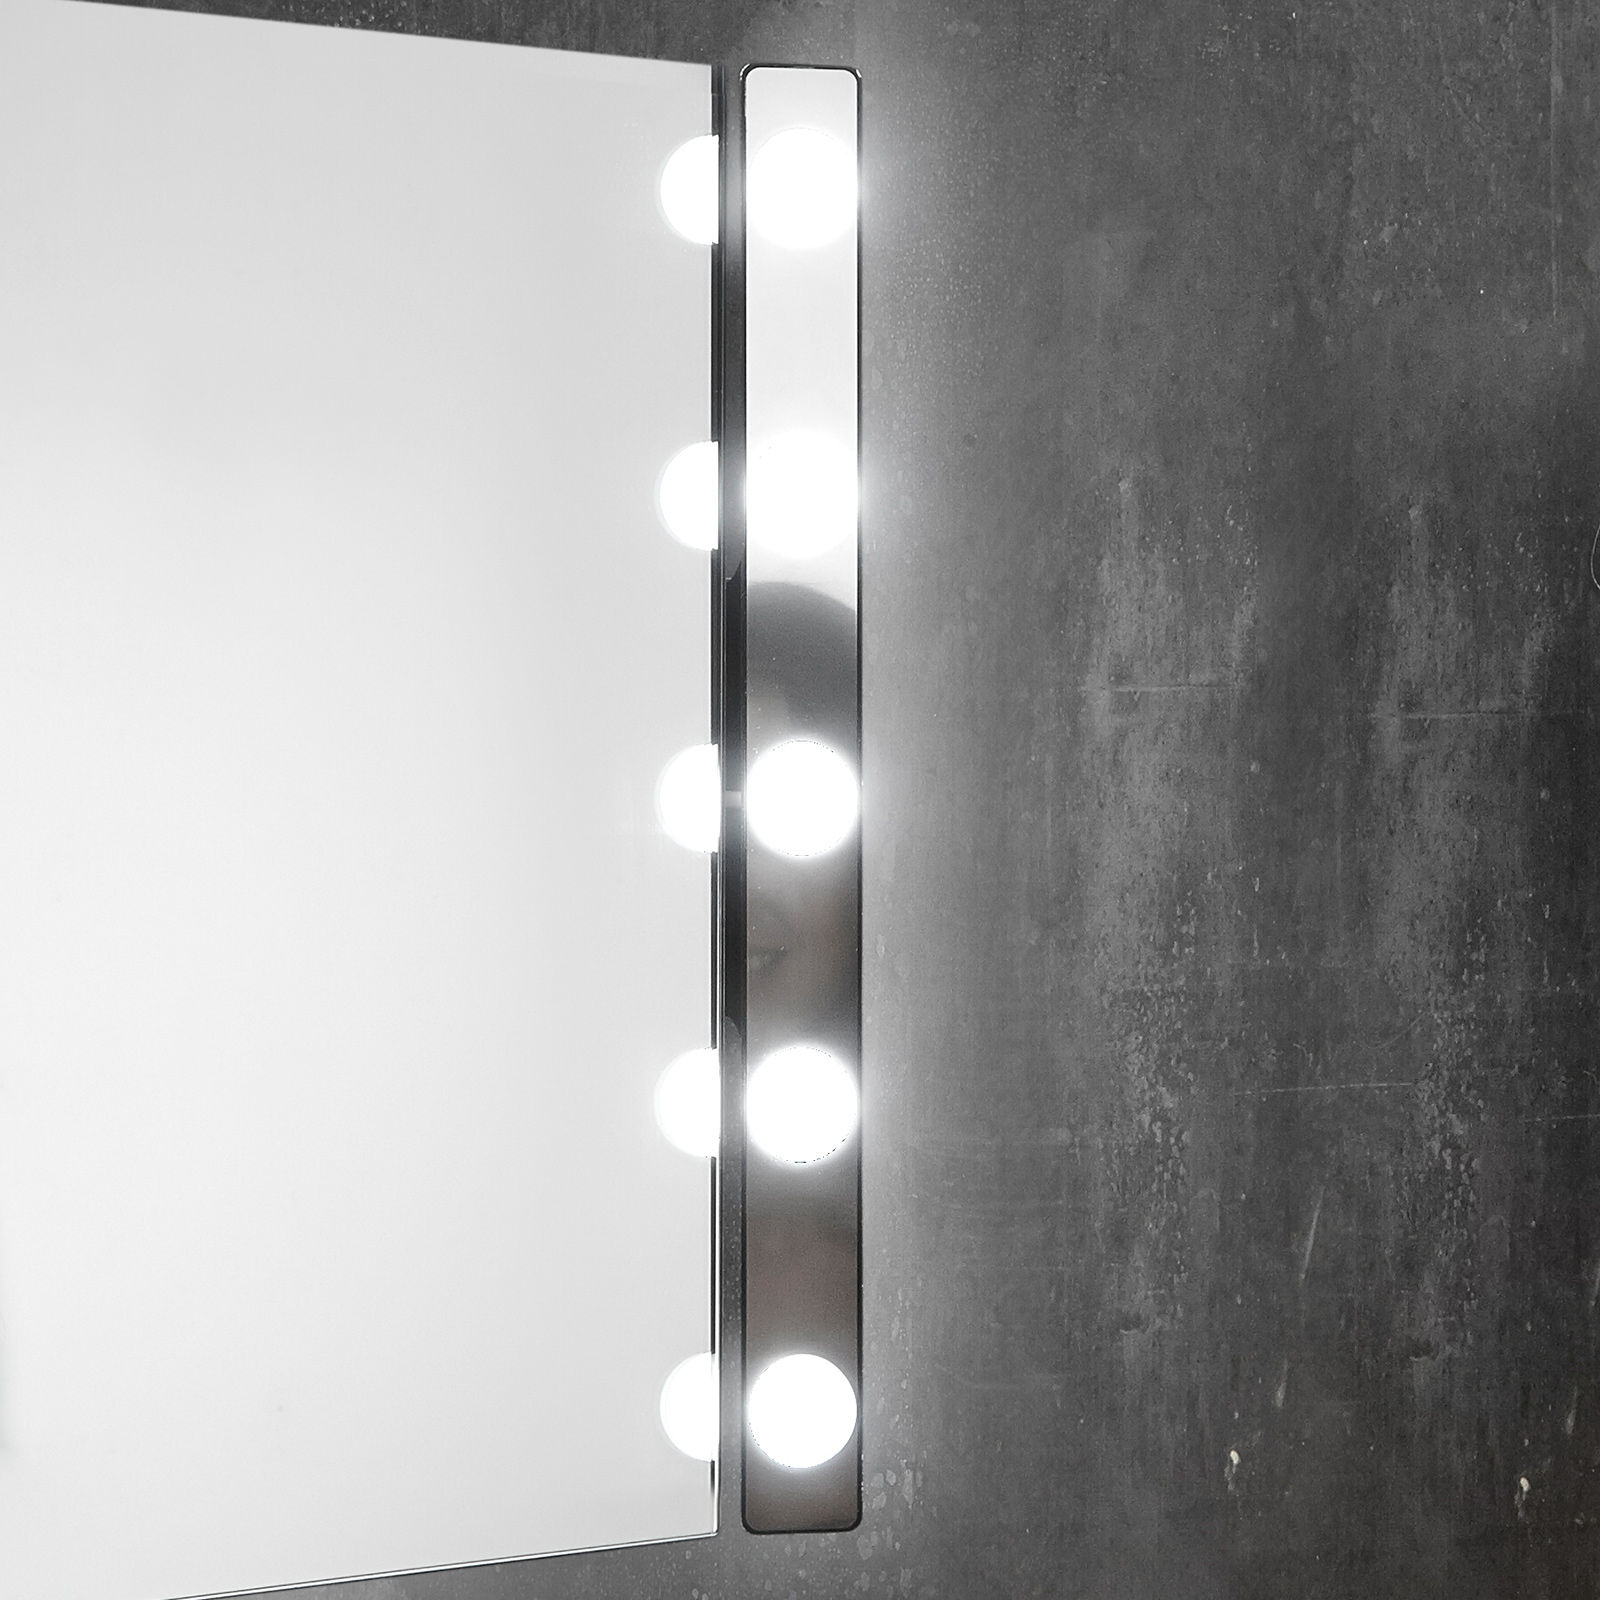 Star Vision Specchio Ovale Luminoso in Stile Hollywood Bianco Specchio Vanity Luminoso con 8 lampadine a LED Regolabili 